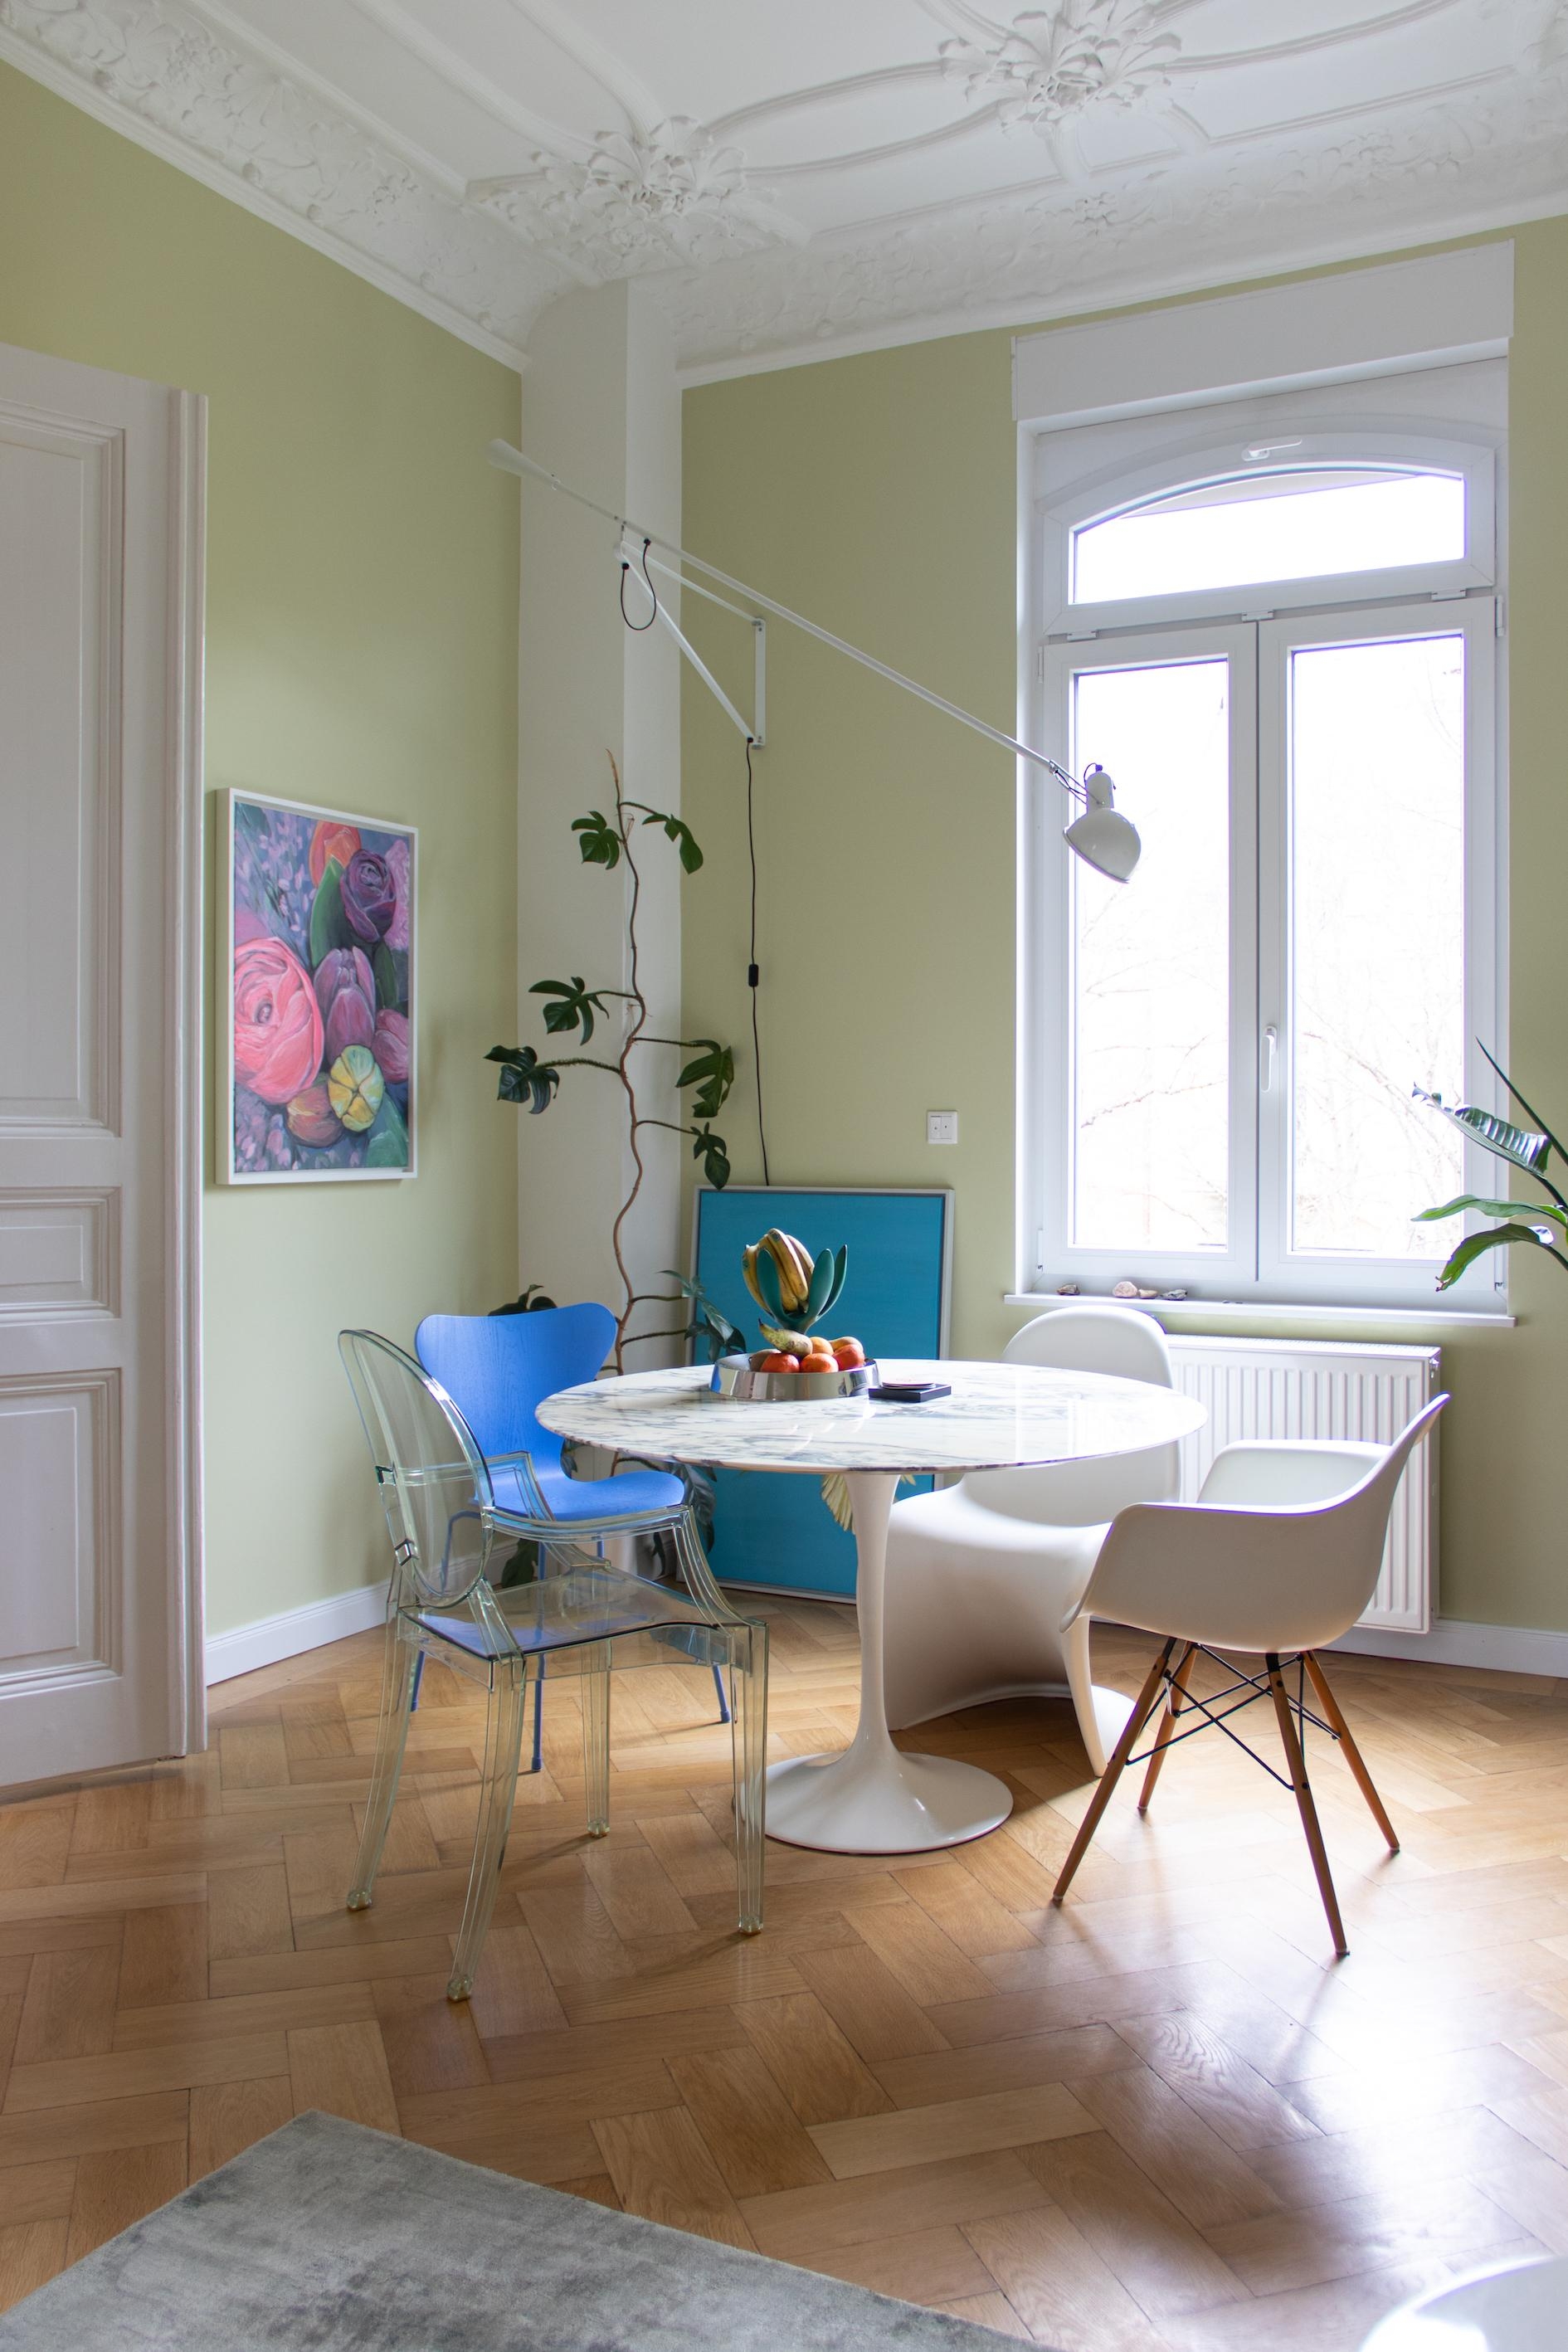 #esszimmer #esstisch #stuhl #marmor #grün #wandfarbe #couchliebt #farbenfroh #farbe #stuck #blau